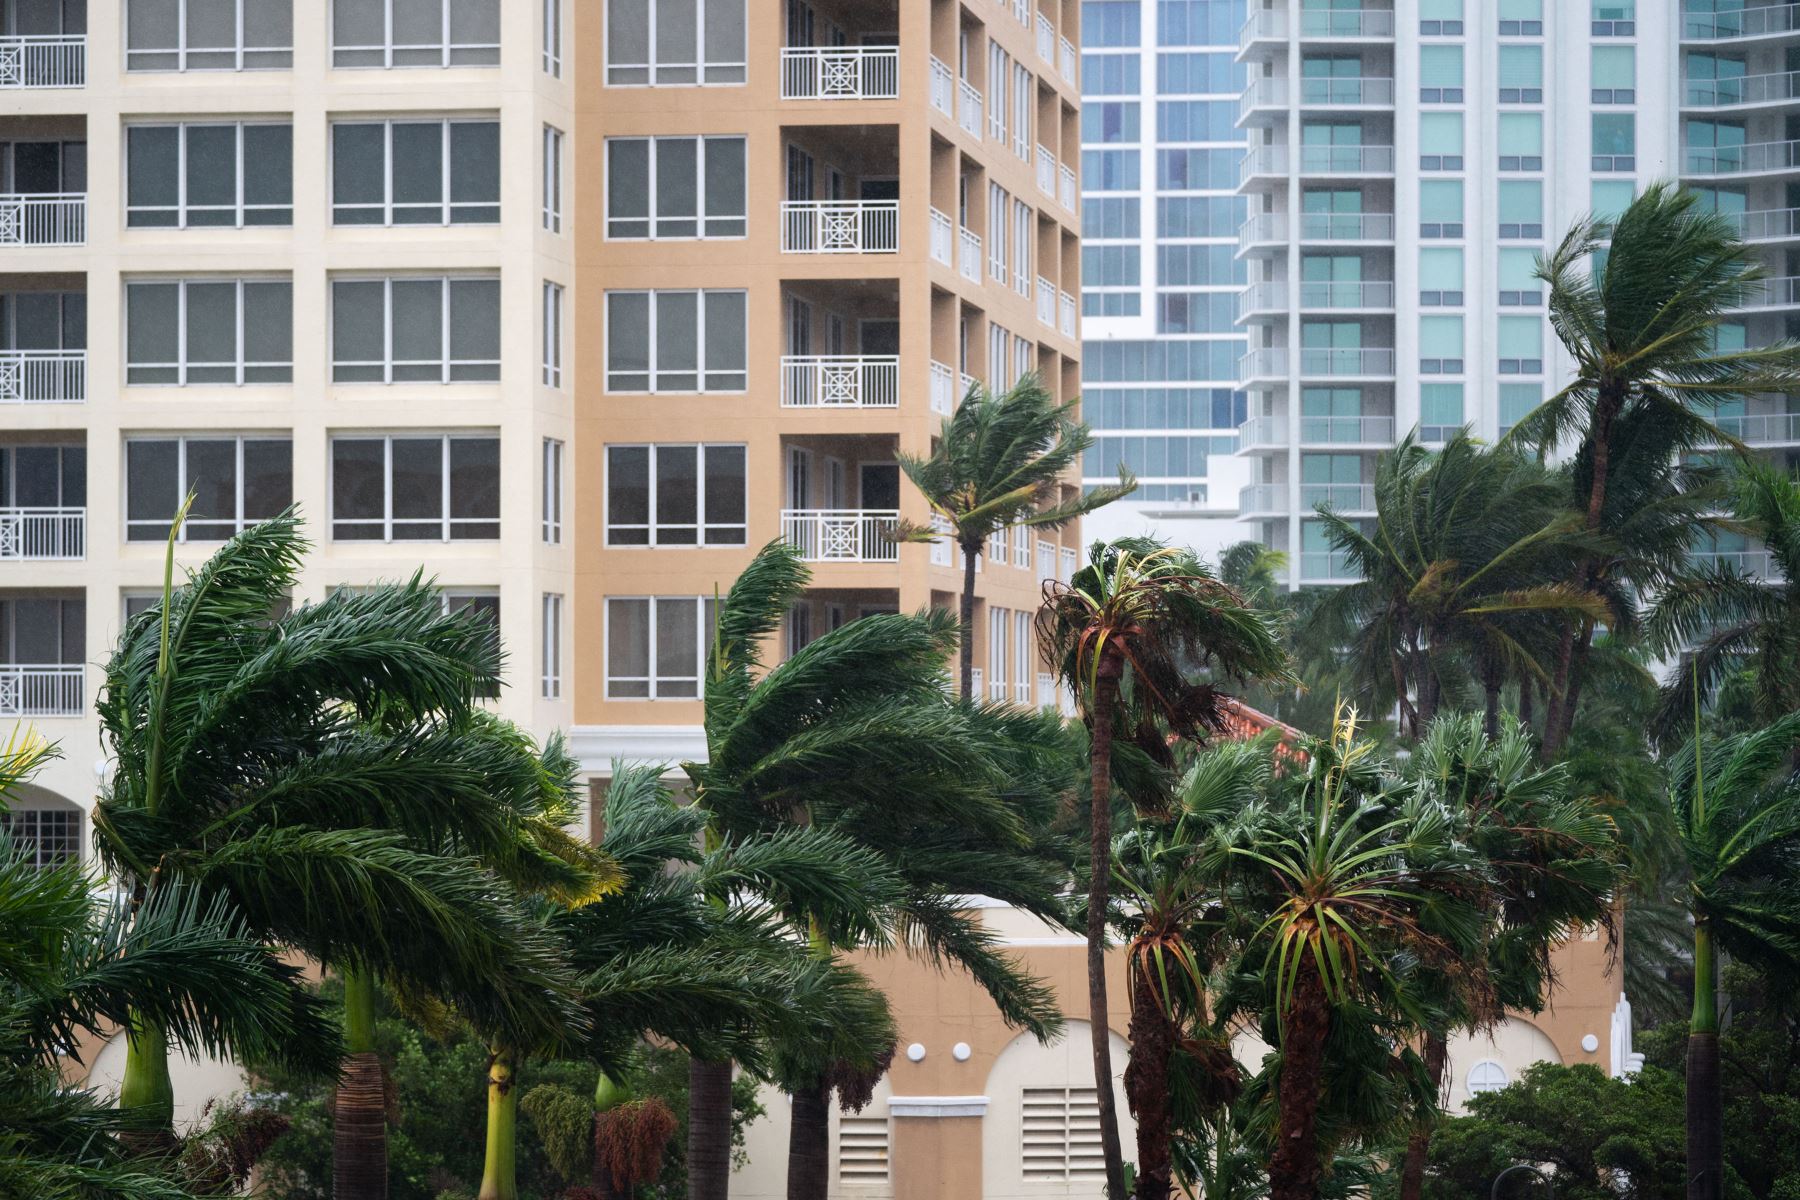 Las ráfagas de viento soplan entre condominios mientras el huracán Ian avanza hacia el sur  en Sarasota, Florida. La tormenta tocó tierra en los Estados Unidos en Cayo Costa, Florida esta tarde como un huracán de categoría 4 con velocidades de viento de más de 140 millas por hora en algunas áreas. 
Foto: AFP